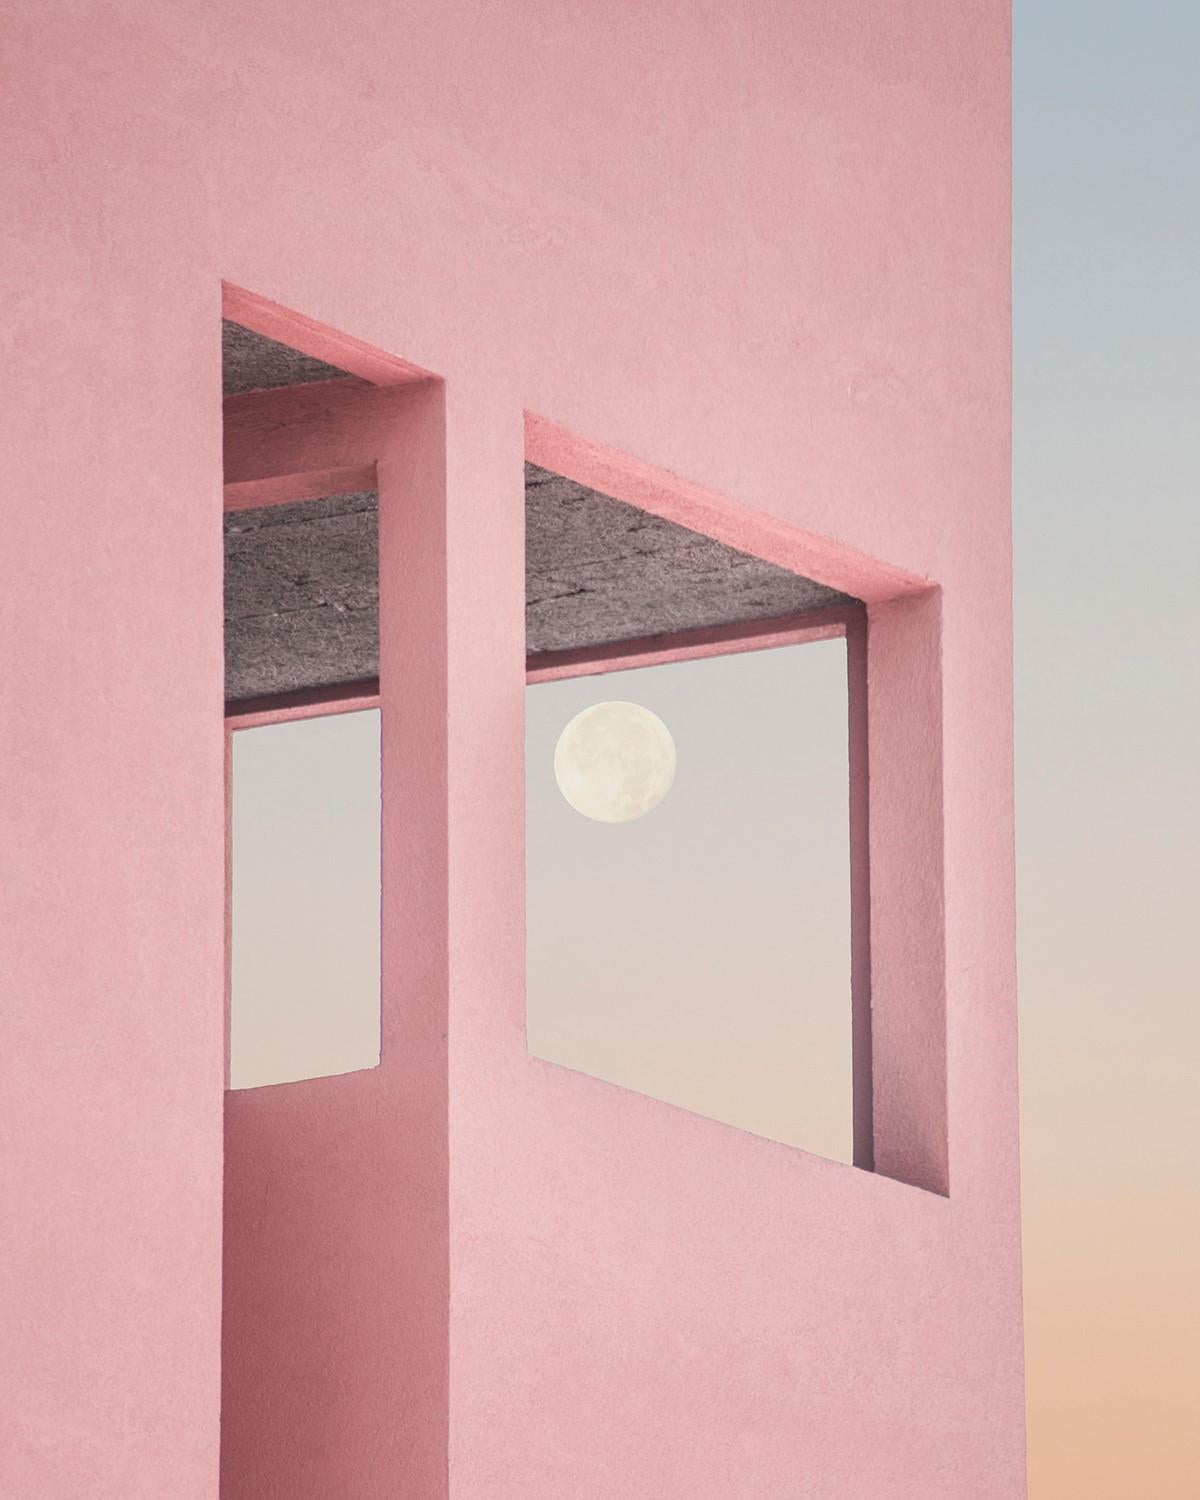 Dieses Werk stellt eine schöne Ansicht eines rosafarbenen Gebäudes mit einem Vollmond darin dar. Es ist ein Fest der Liebe, Zärtlichkeit und Leidenschaft zwischen zwei Wesen. Es könnte also das ideale romantische Geschenk sein, um Ihre Gefühle zum